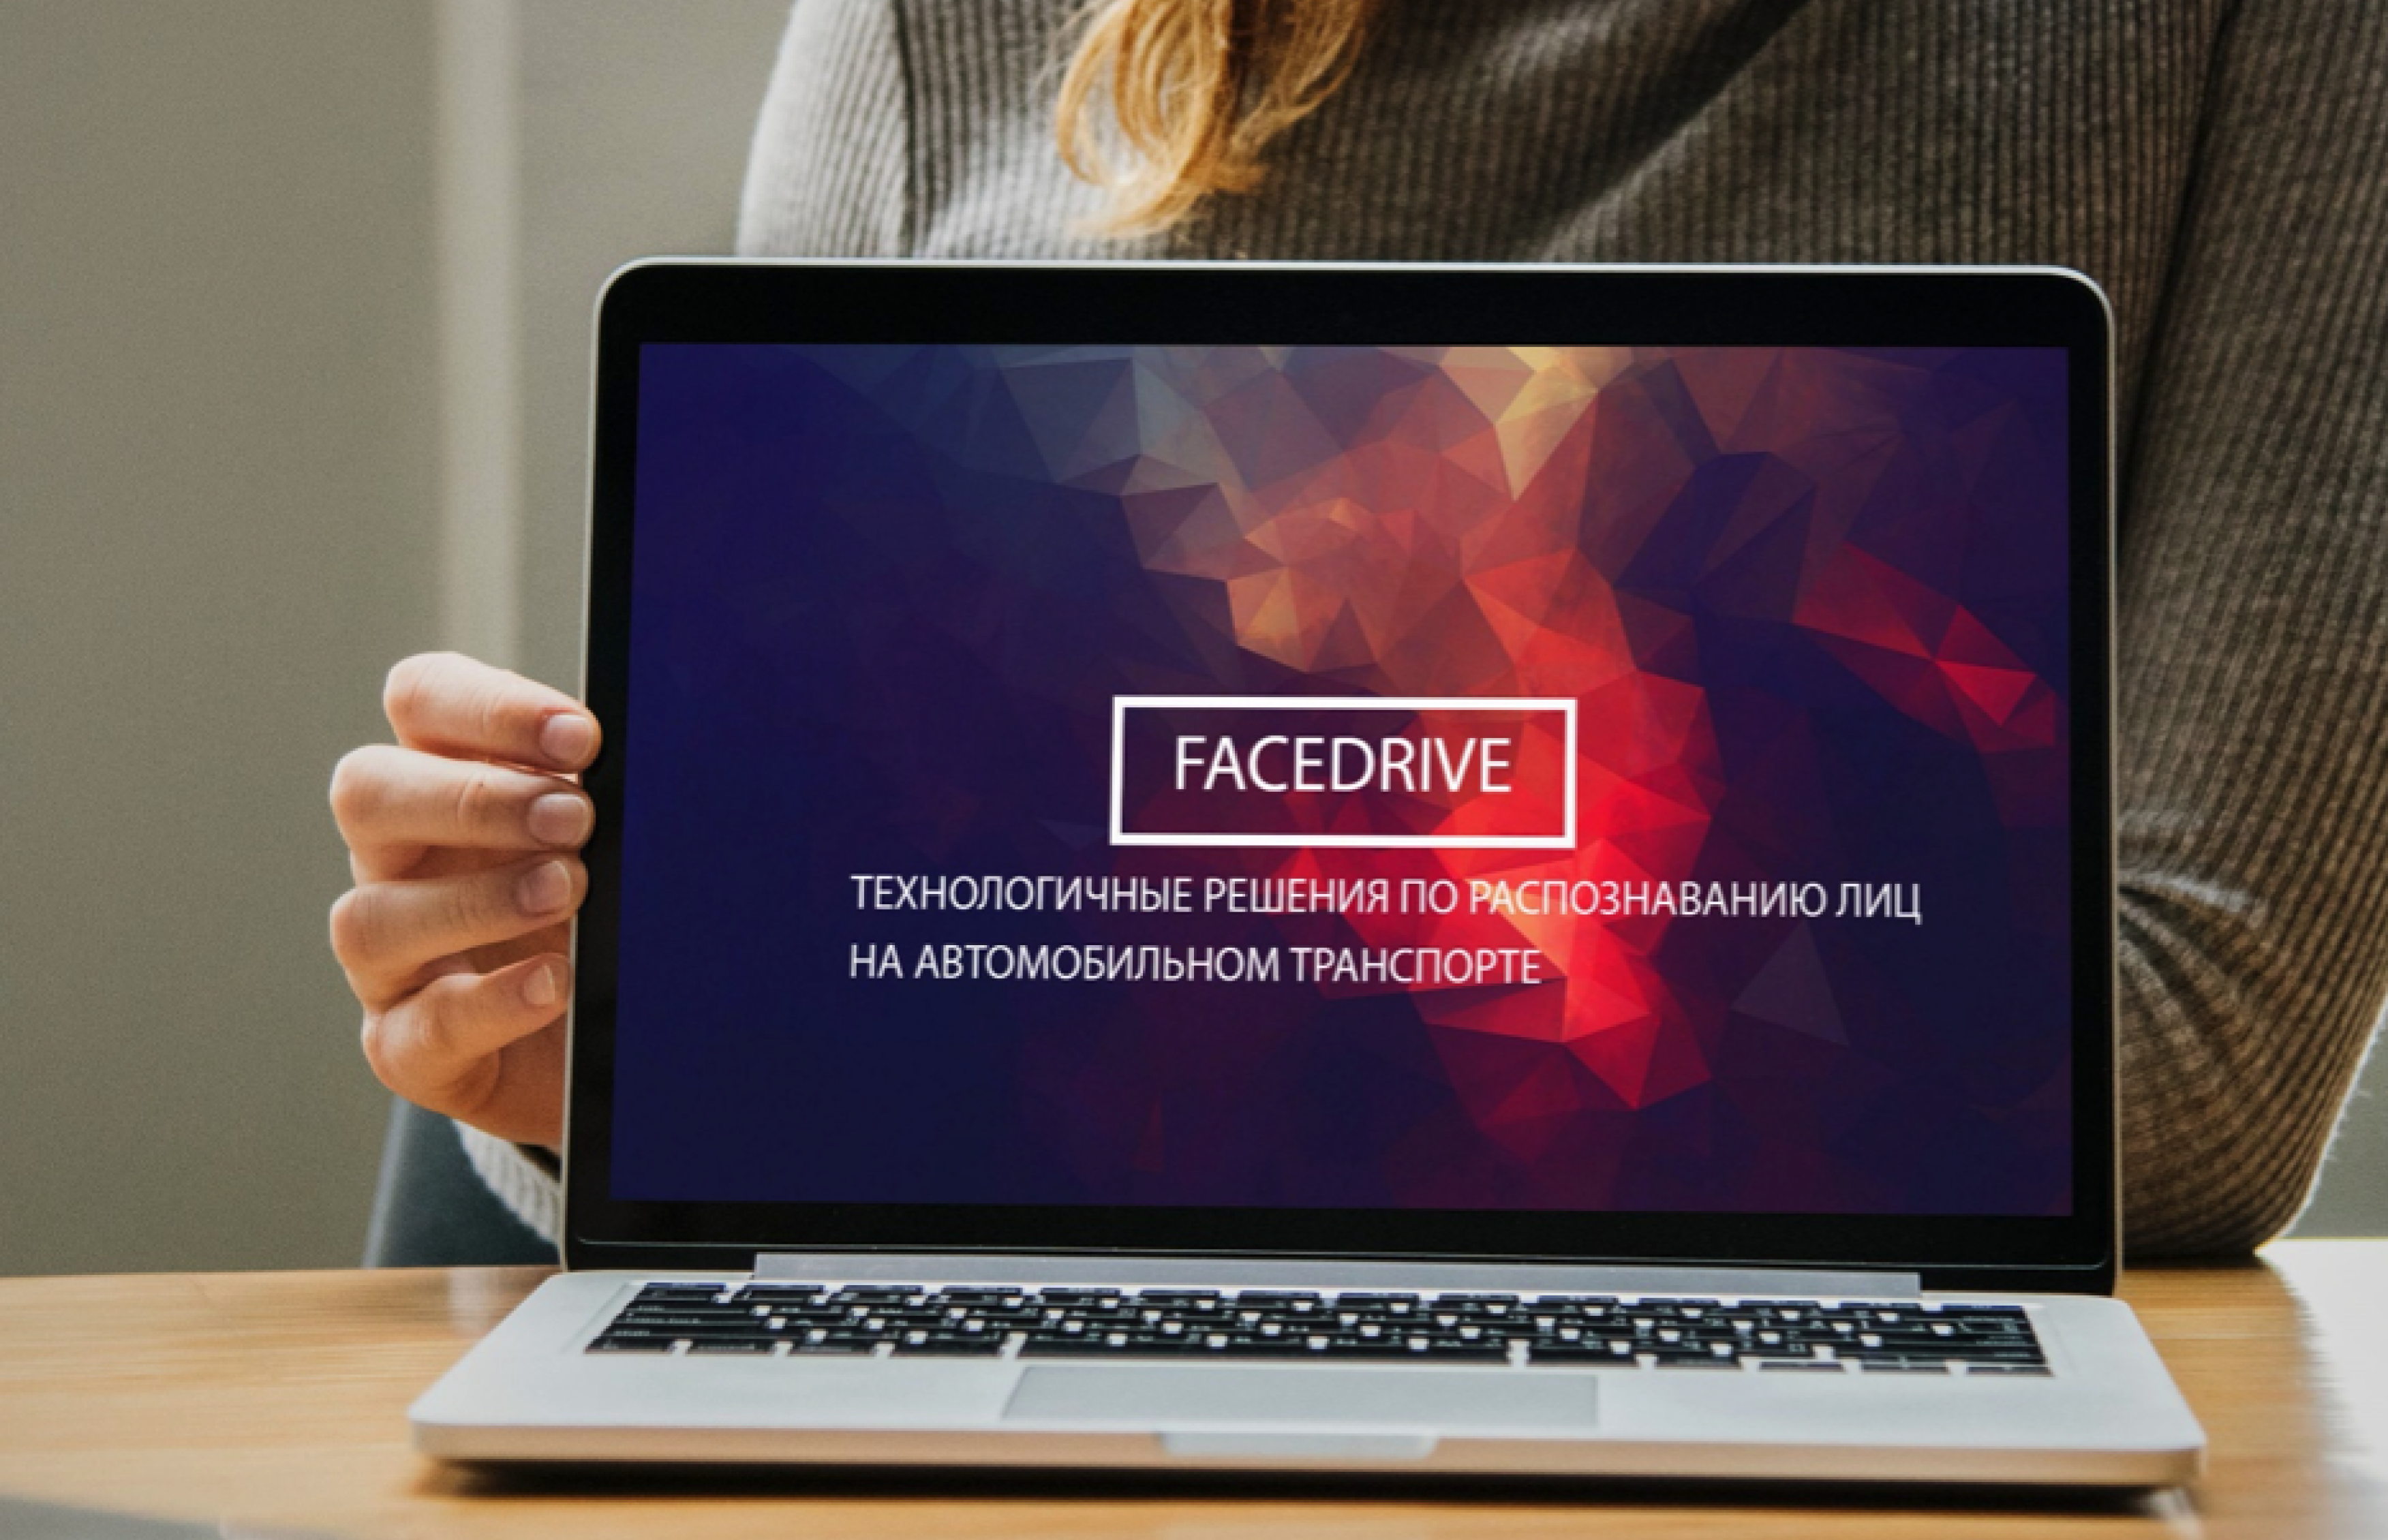 FaceDrive - Услуга по идентификации водителя транспортного средства путём распознавания его лица